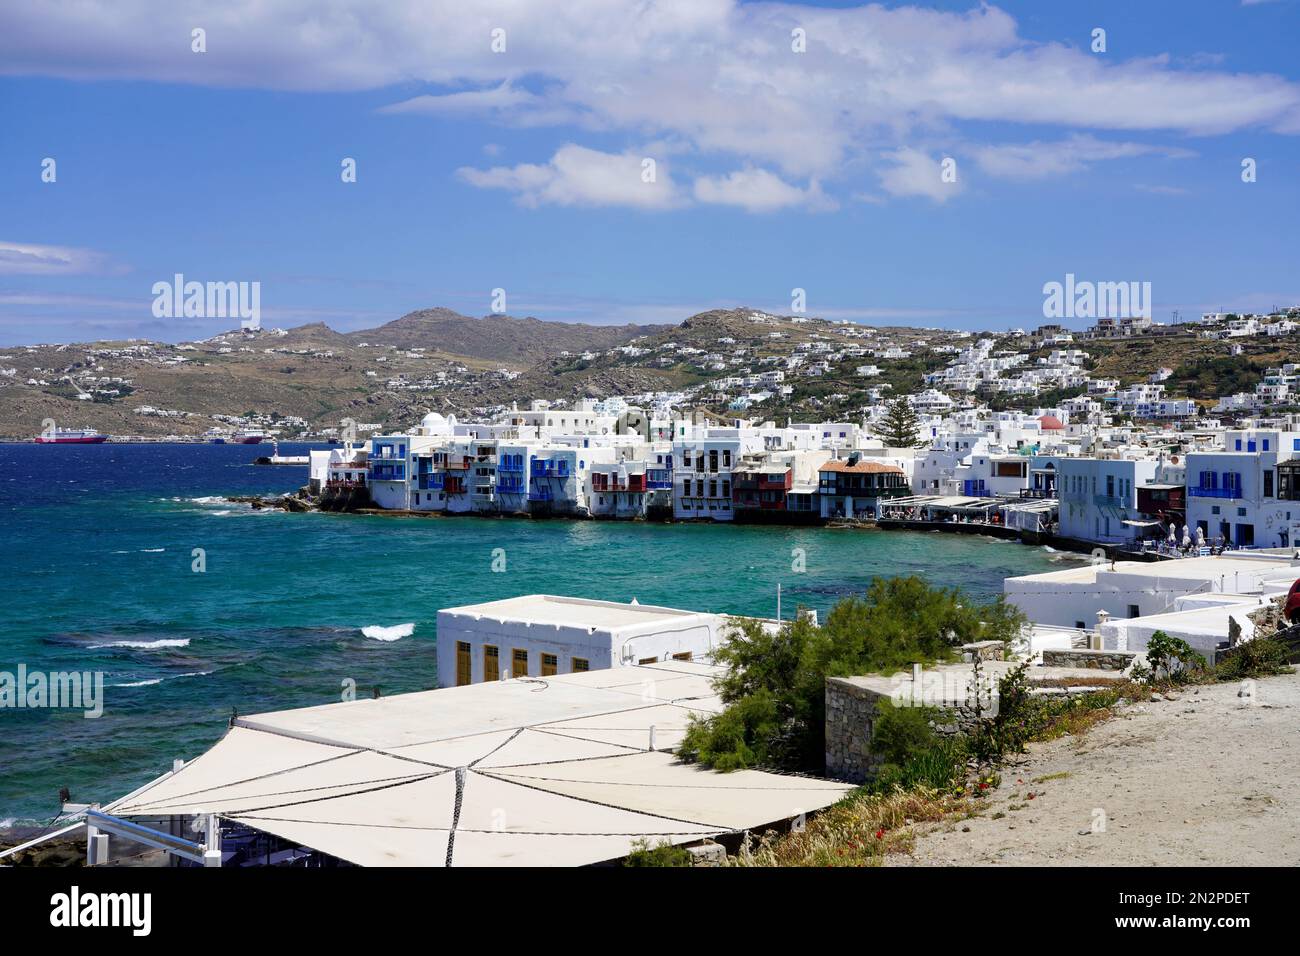 Paysage urbain de Mykonos avec petite Venise, île de Mykonos, Grèce Banque D'Images